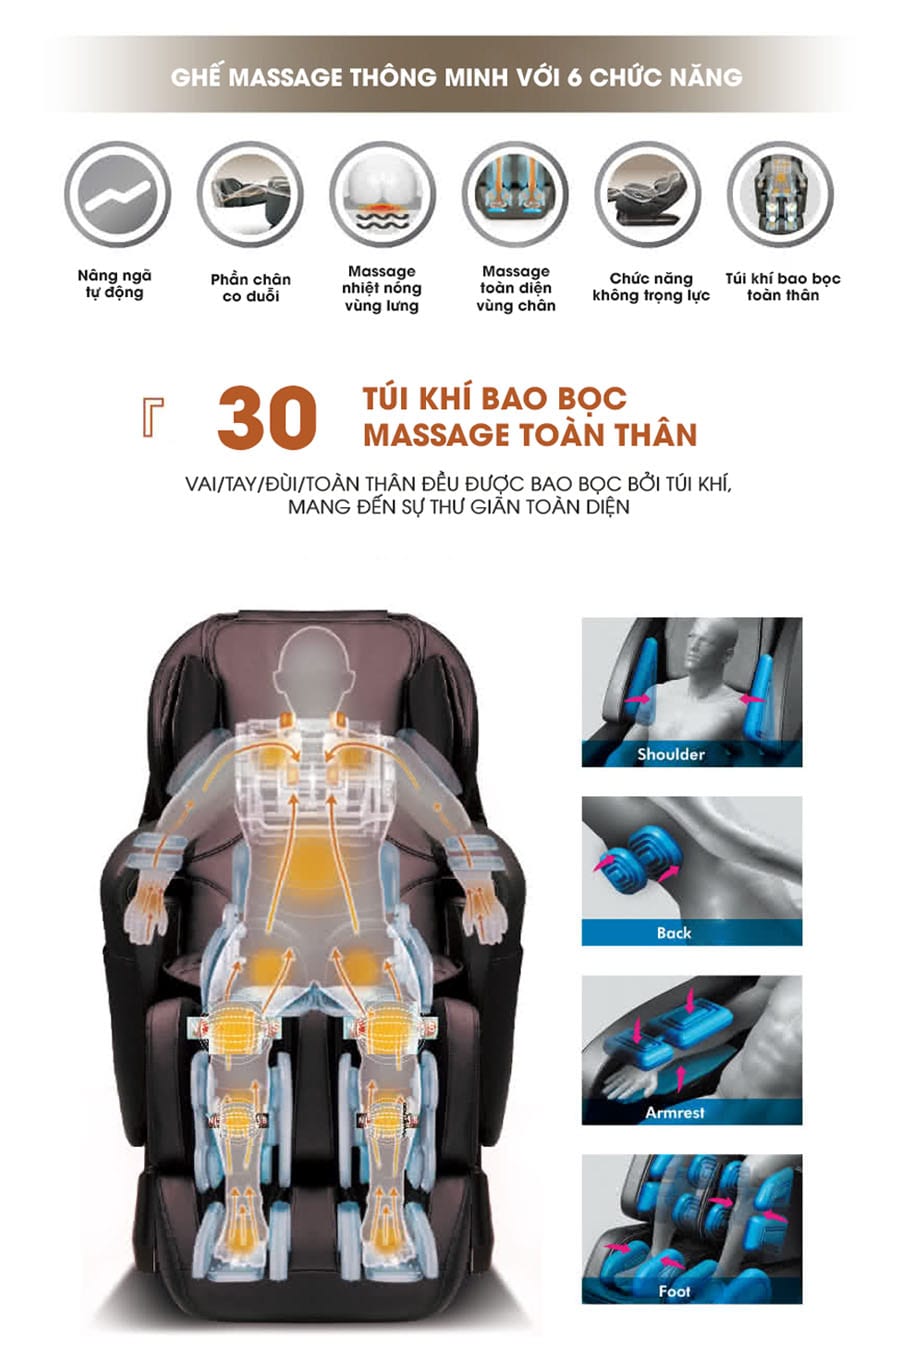 Ghế massage Haruko được thiết kế với công nghệ hiện đại,thông minh